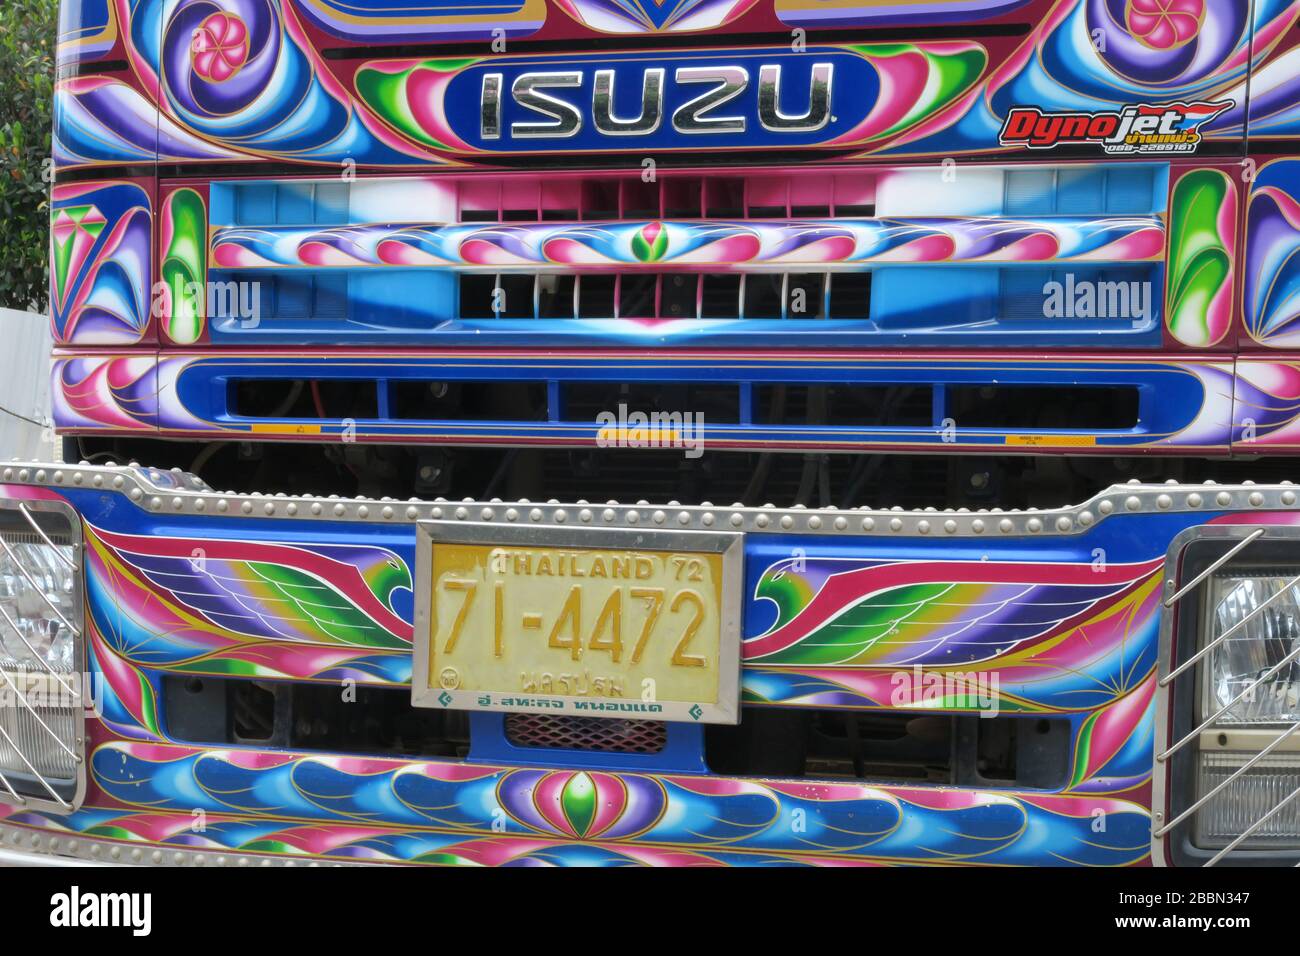 Hell dekorierter Truck in der lokalen Tradition vieler Farben, Thailand Stockfoto